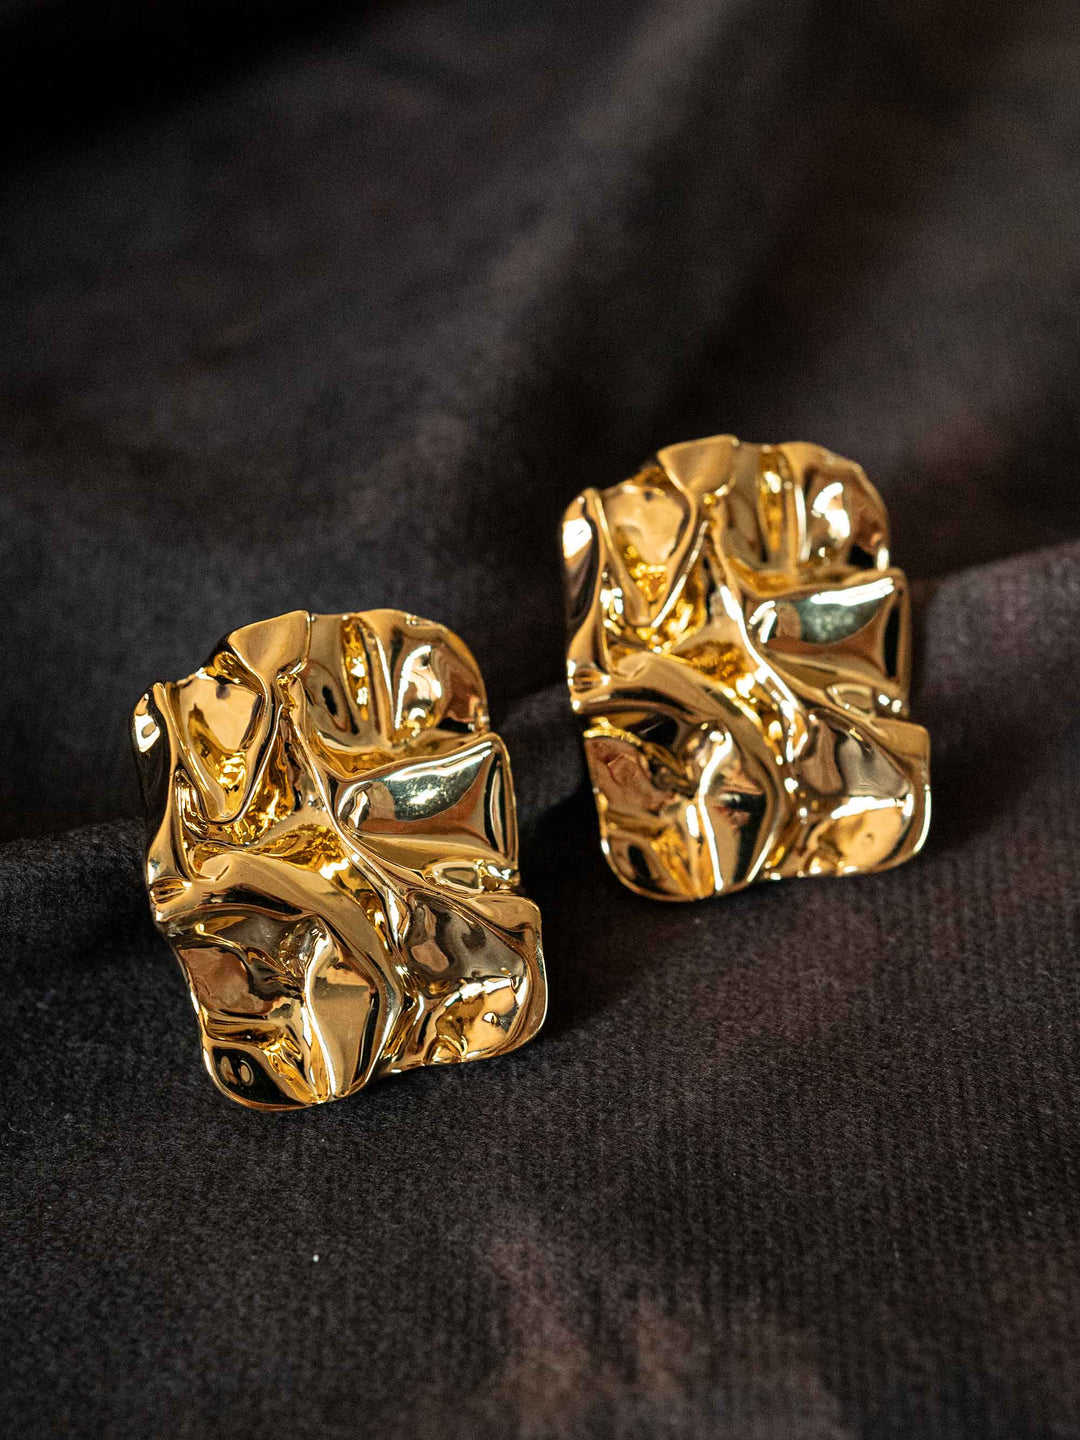 A pair of gold ruffled earrings